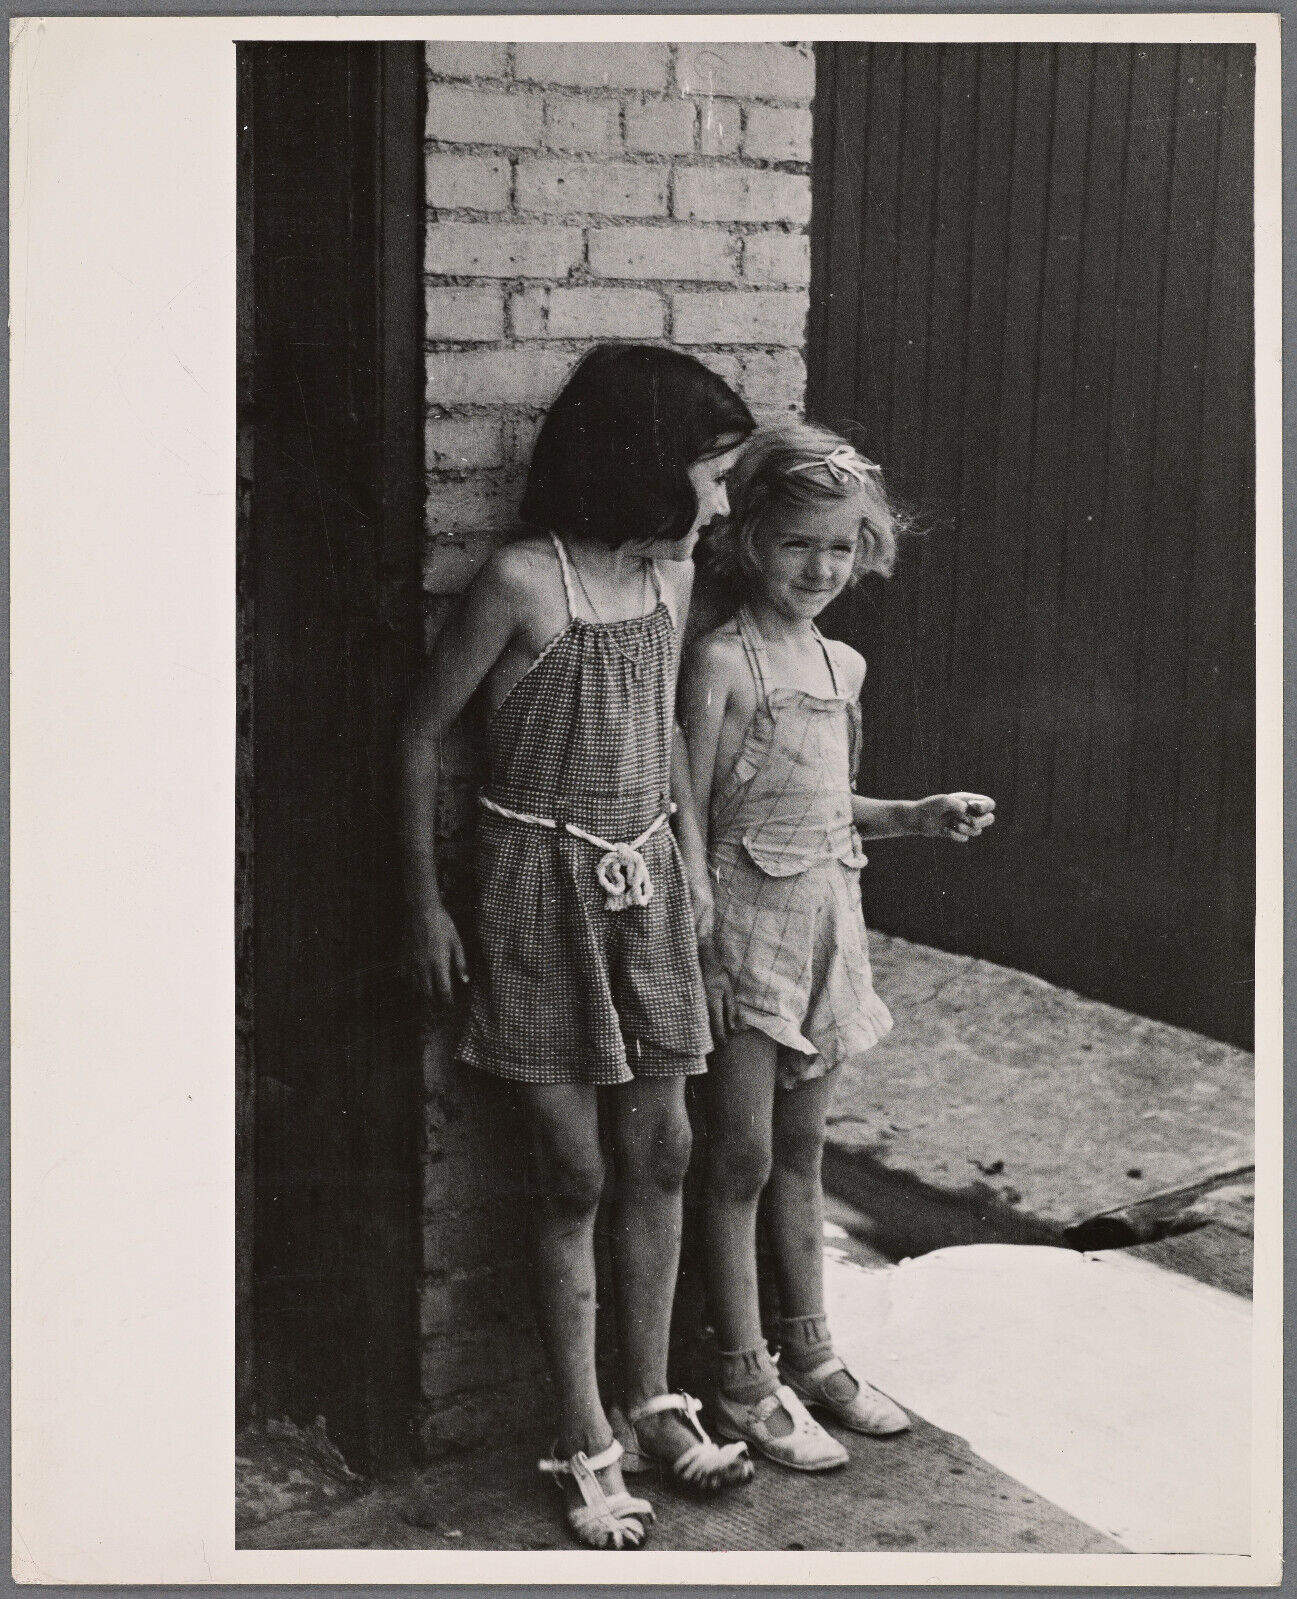 Old 8X10 Photo, 1930's Children in slum district. Baltimore, Maryland. 4000915